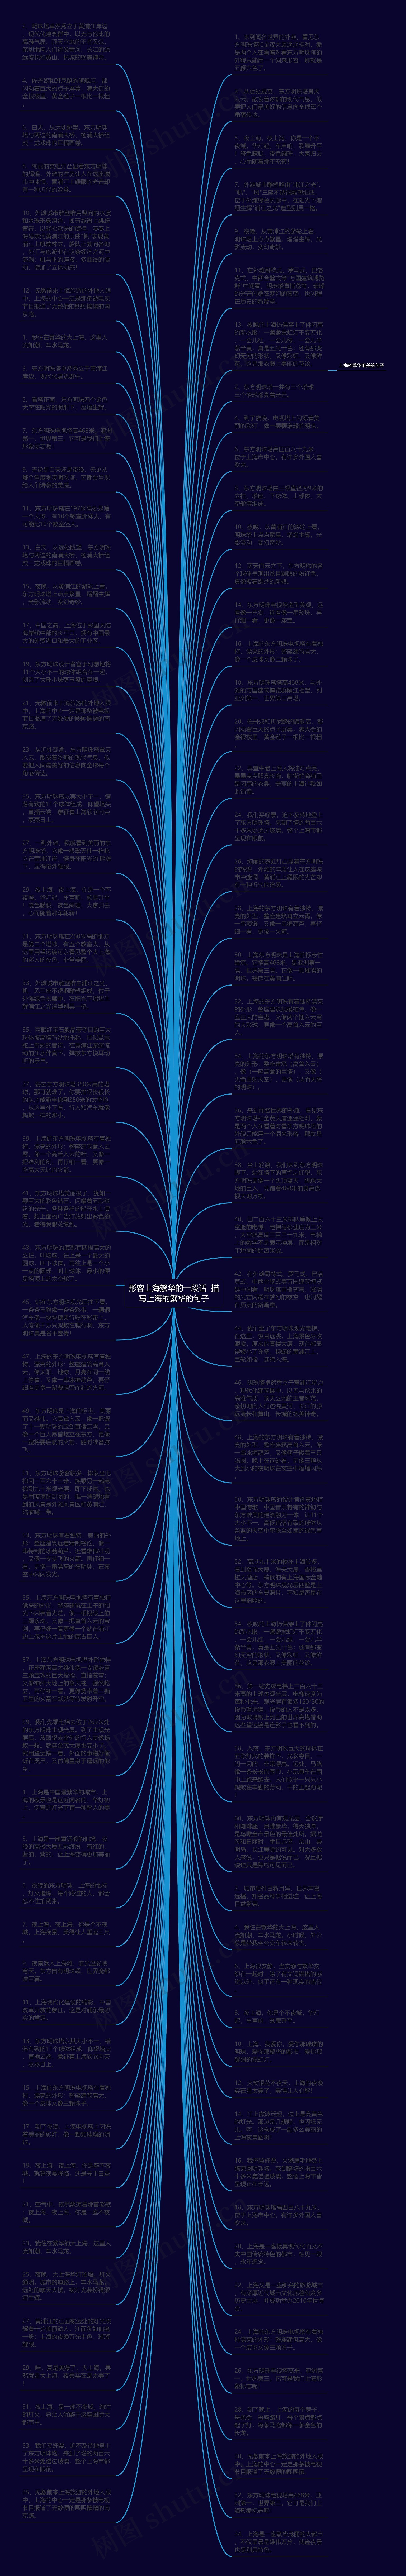 形容上海繁华的一段话  描写上海的繁华的句子思维导图